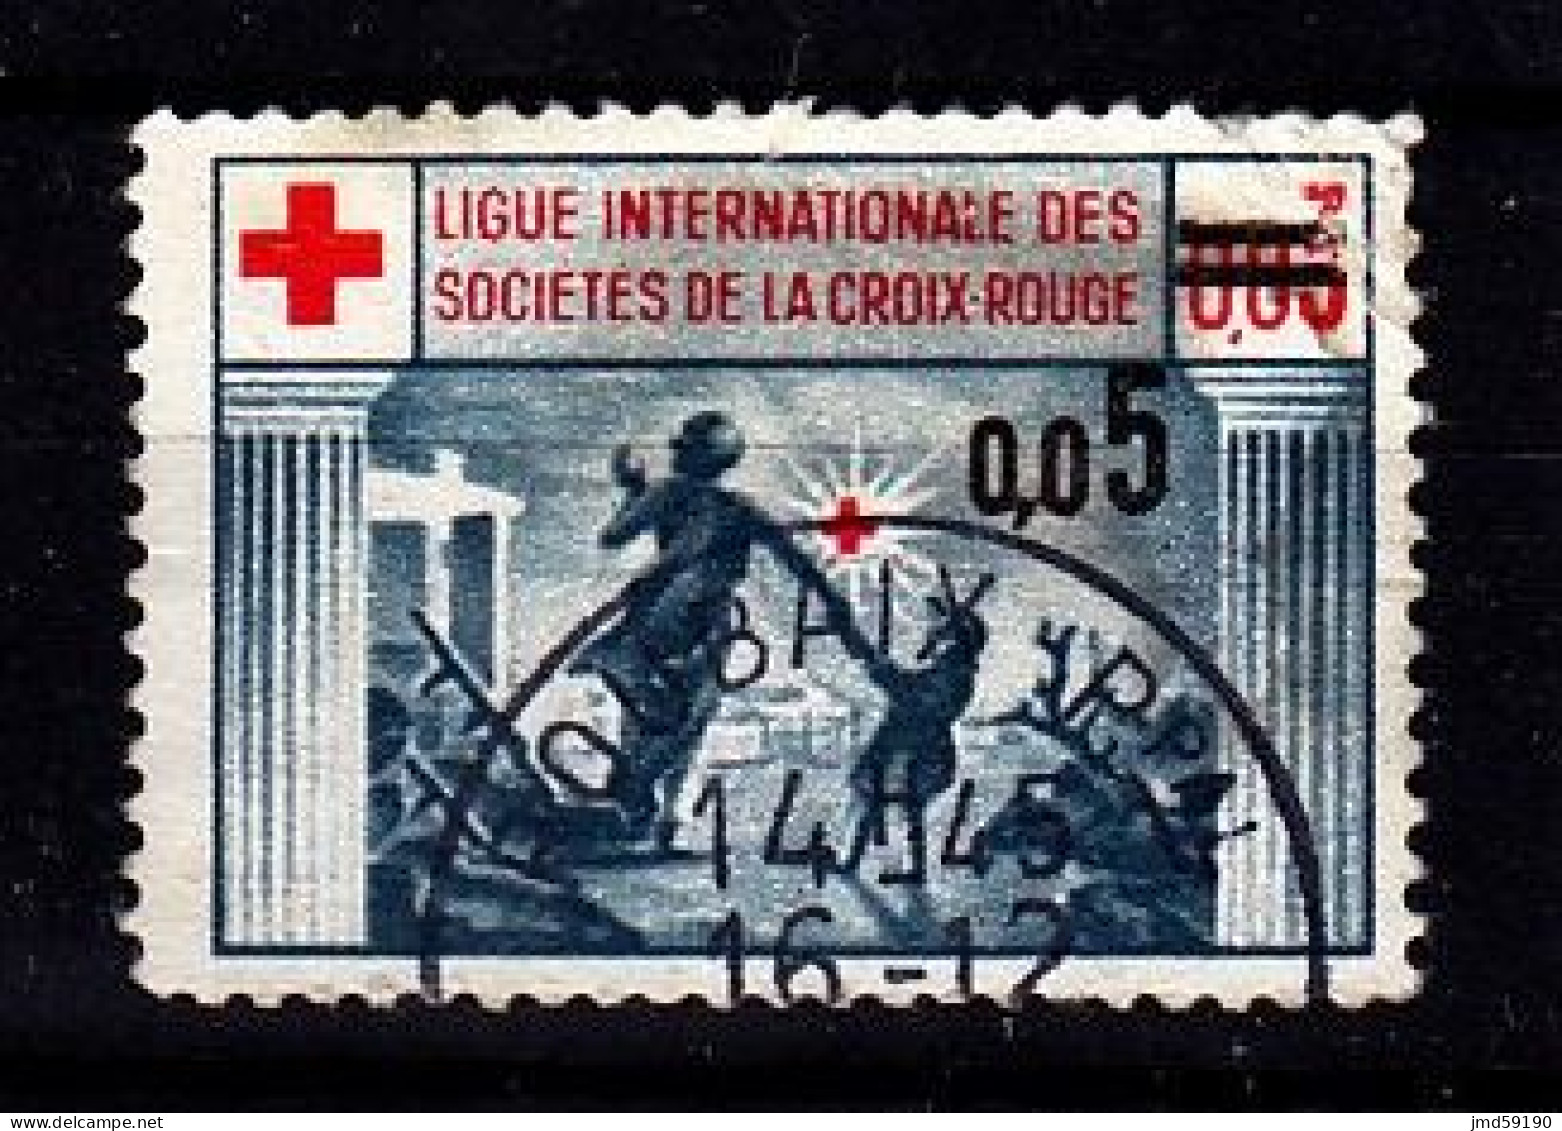 France - Vignette Oblitérée Ligue Internationale Des Sociétés De La Croix Rouge Avec Surcharge 0.05 - Rode Kruis